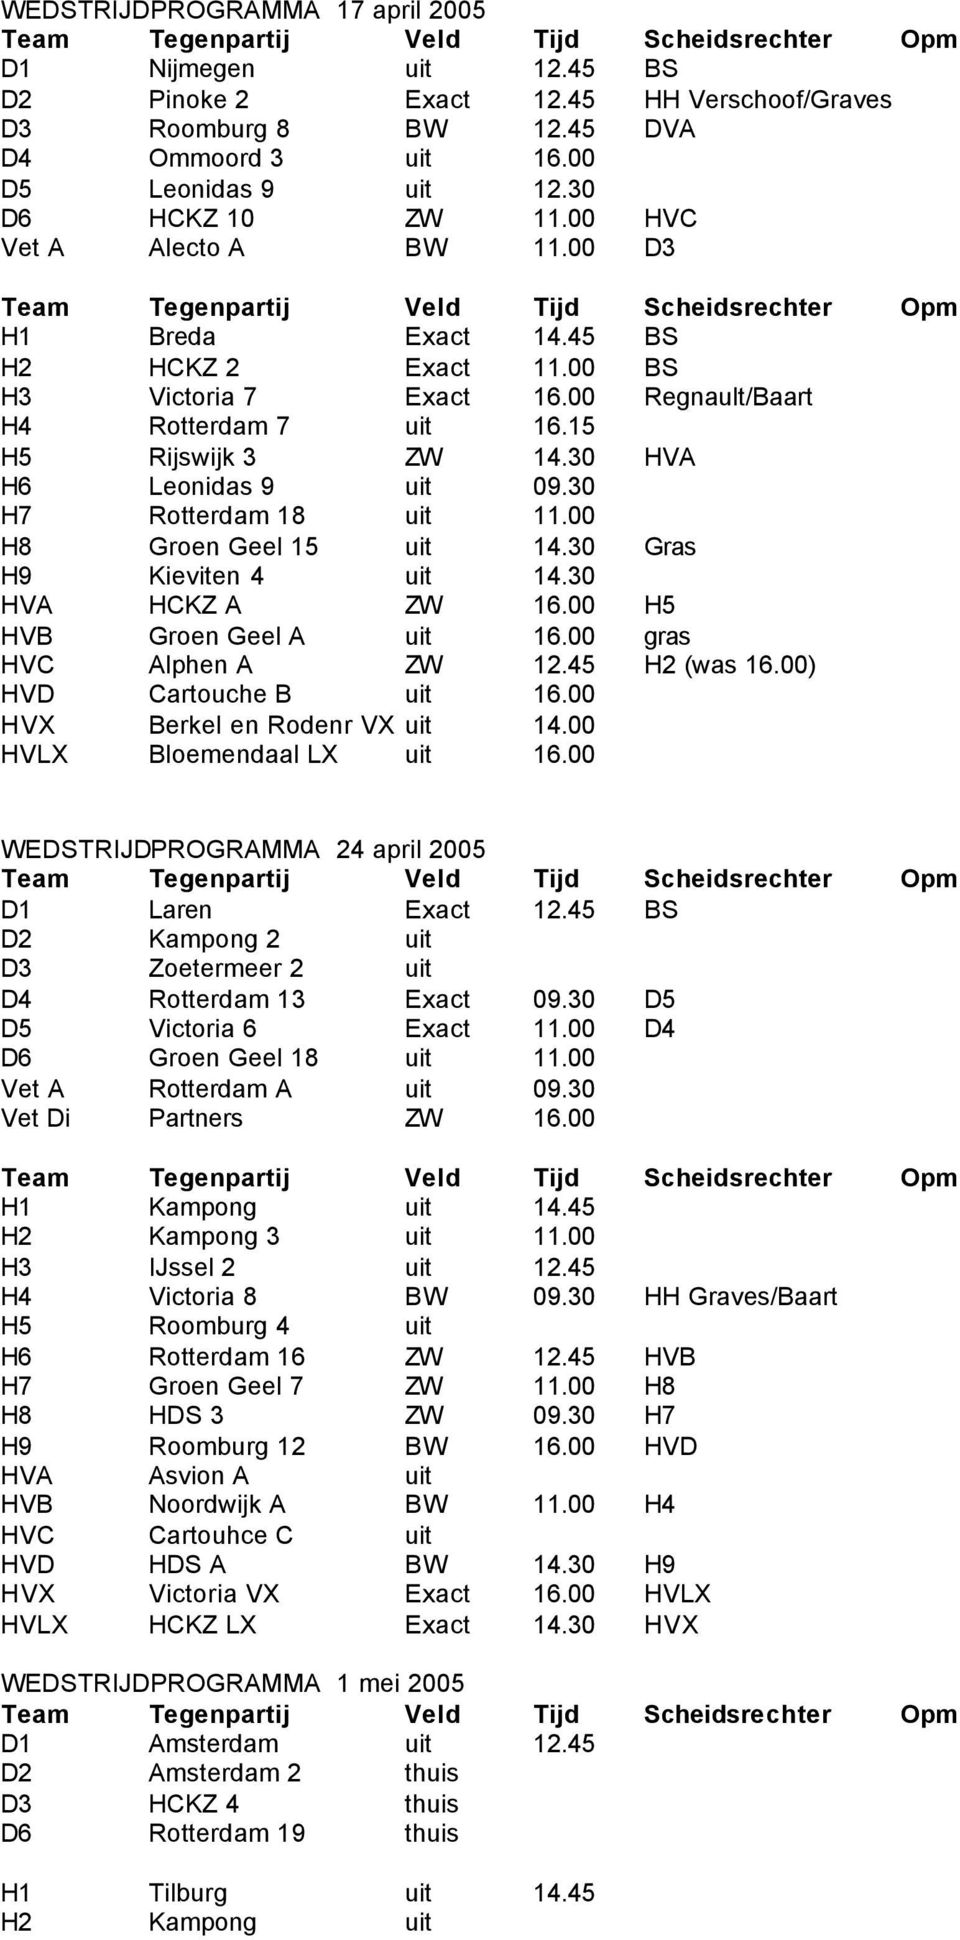 00 Regnault/Baart H4 Rotterdam 7 uit 16.15 H5 Rijswijk 3 ZW 14.30 HVA H6 Leonidas 9 uit 09.30 H7 Rotterdam 18 uit 11.00 H8 Groen Geel 15 uit 14.30 Gras H9 Kieviten 4 uit 14.30 HVA HCKZ A ZW 16.